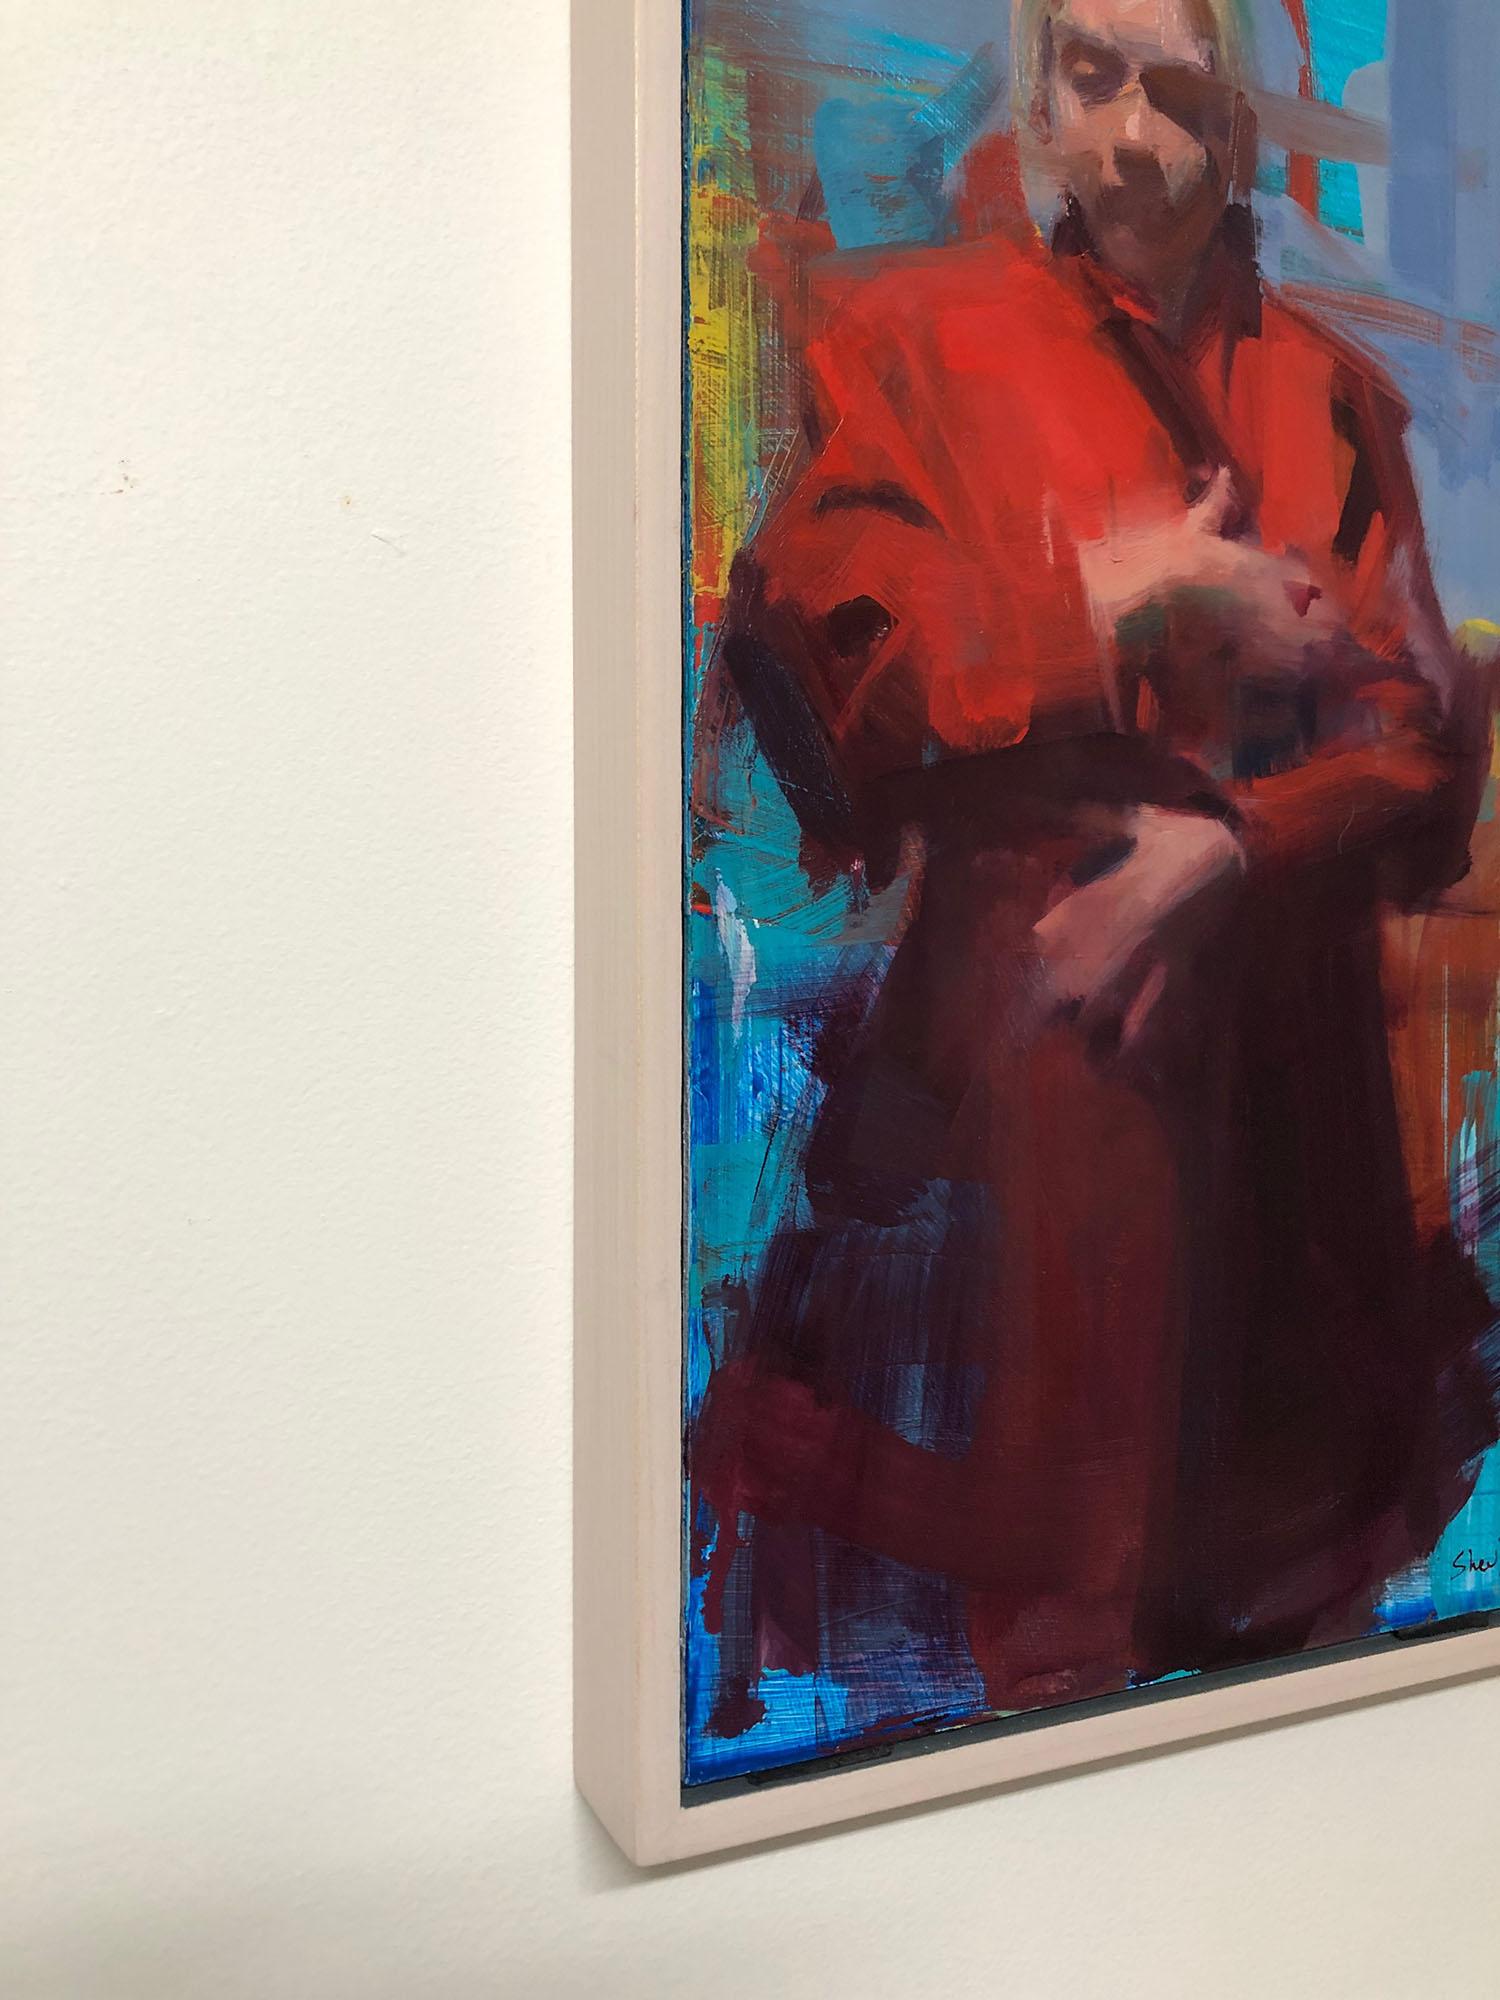 Manteau rouge - peinture figurative d'une femme dans un trench-coat rouge - Marron Portrait Painting par David Shevlino